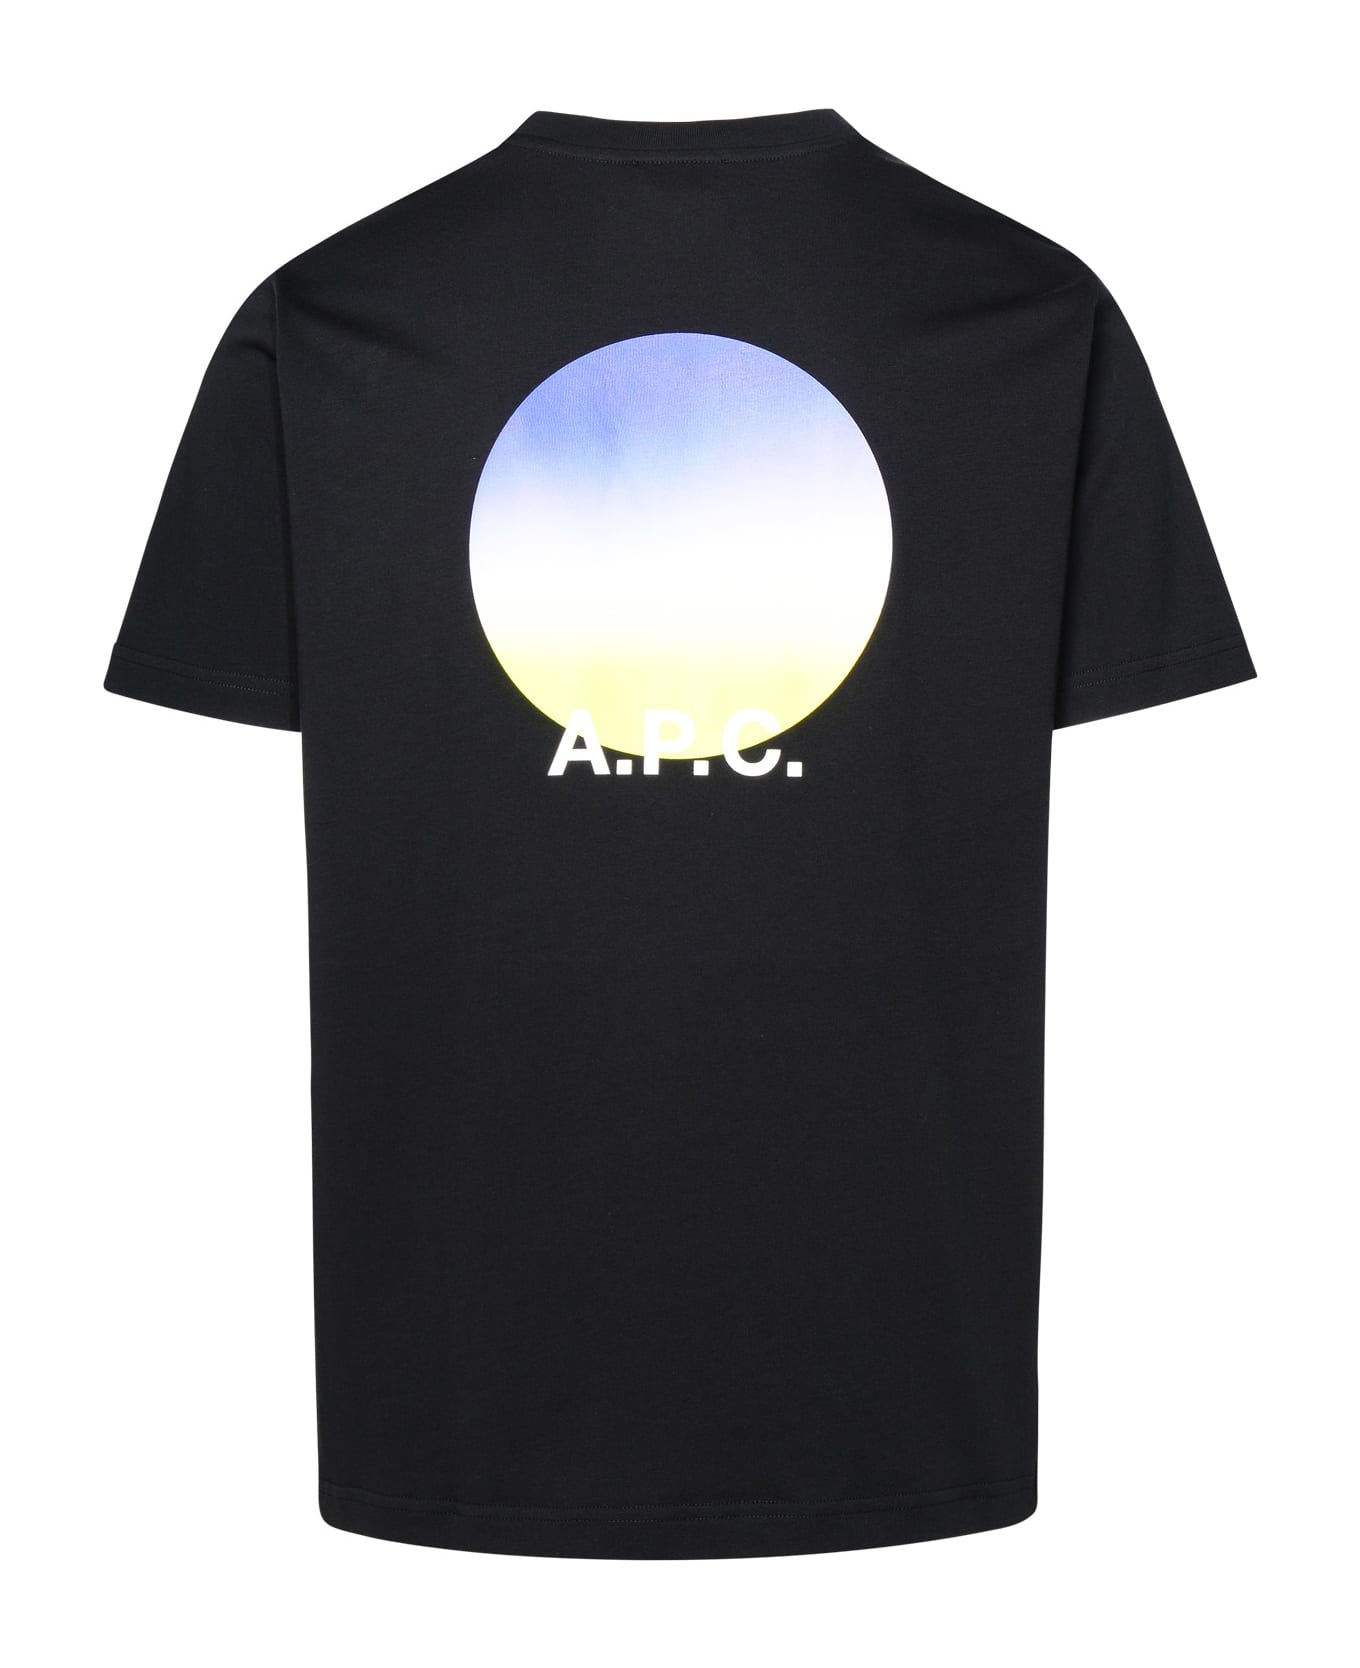 A.P.C. Black Cotton T-shirt - Black シャツ